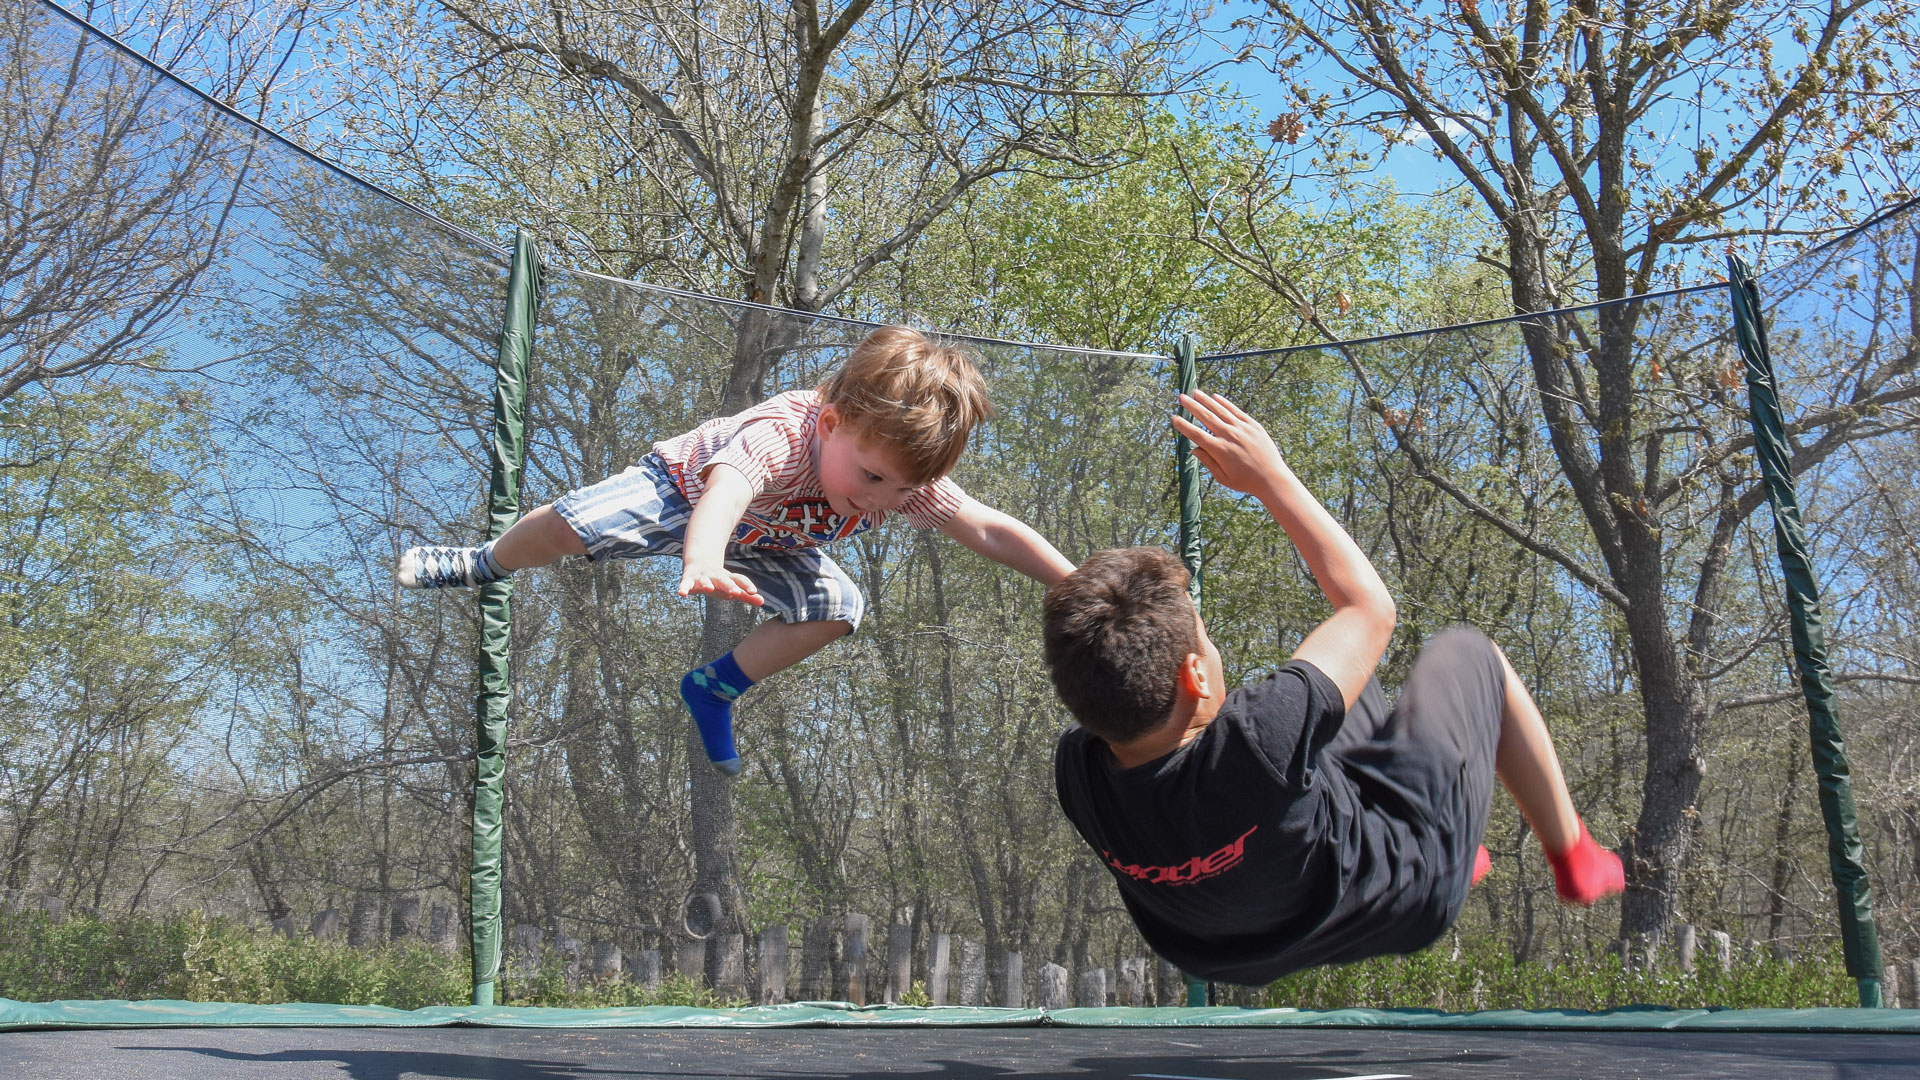 Kinder beim Trampolin hüpfen | Bildquelle: Pixabay